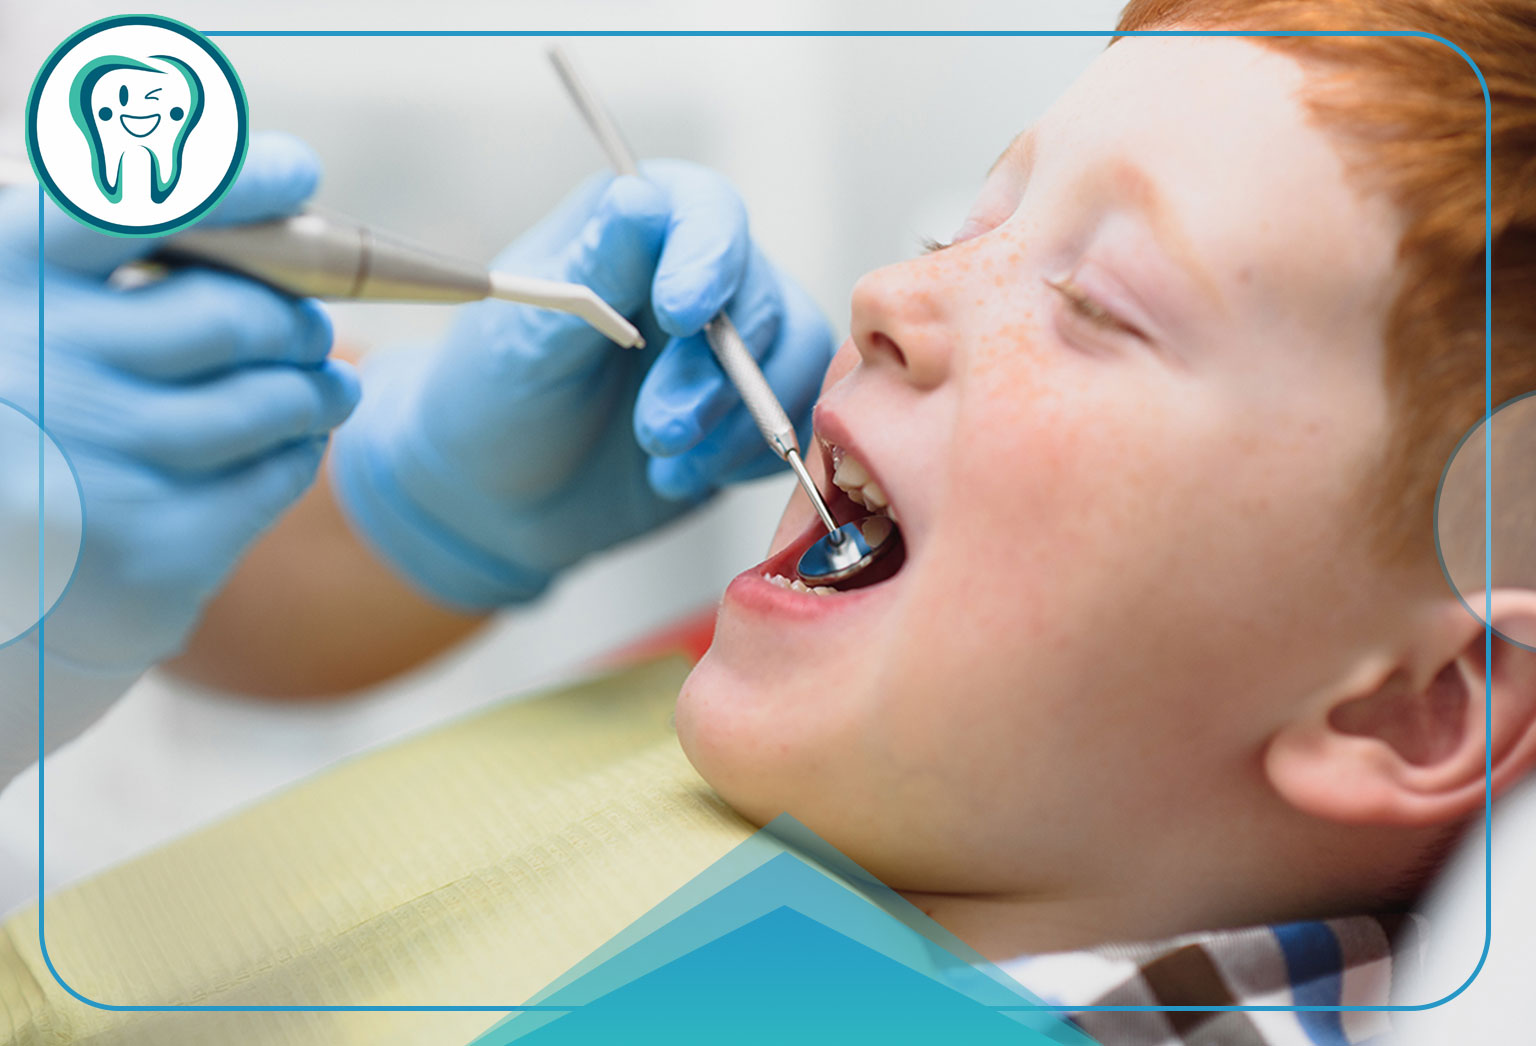 اگر دندان شیری کودک بيفتد چه کاري بايد انجام داد؟